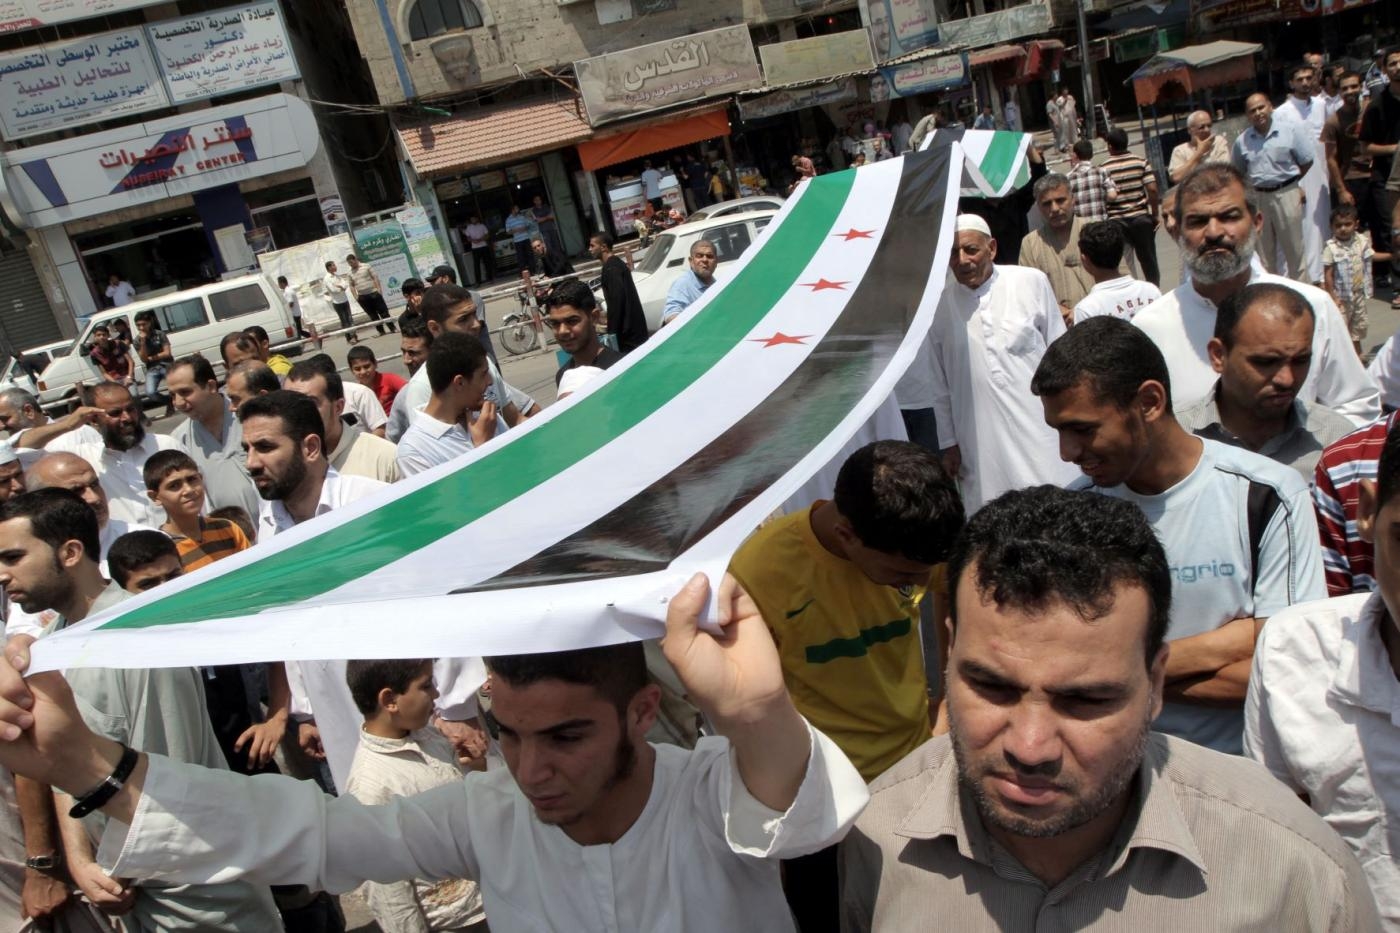 Des Palestiniens portant un drapeau de l’opposition syrienne manifestent contre le président syrien Bachar al-Assad et en soutien aux civils syriens dans le camp de réfugiés de Nuseirat (bande de Gaza), le 22 juin 2012 (AFP)